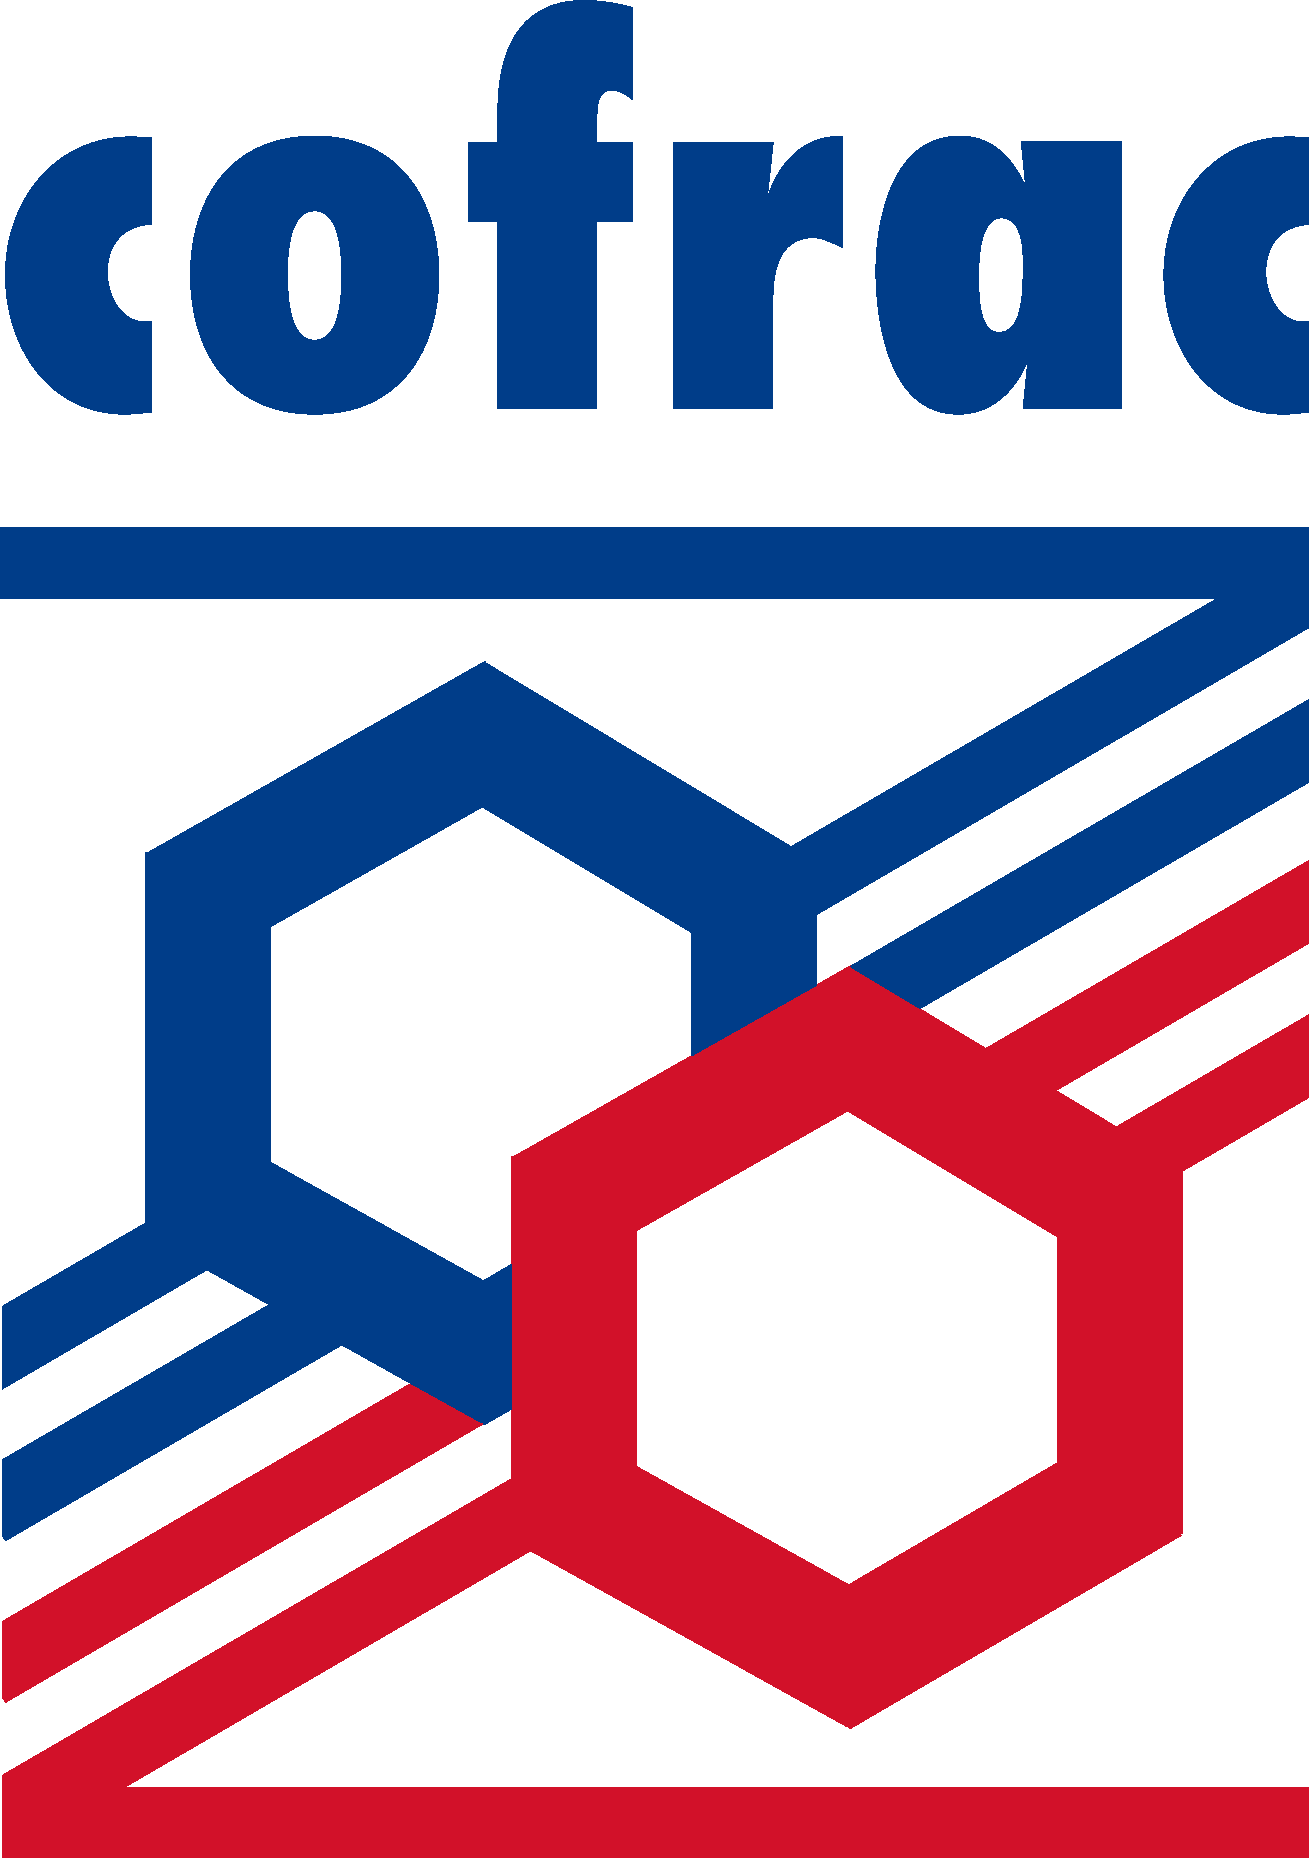 Cofrac Logo Vector